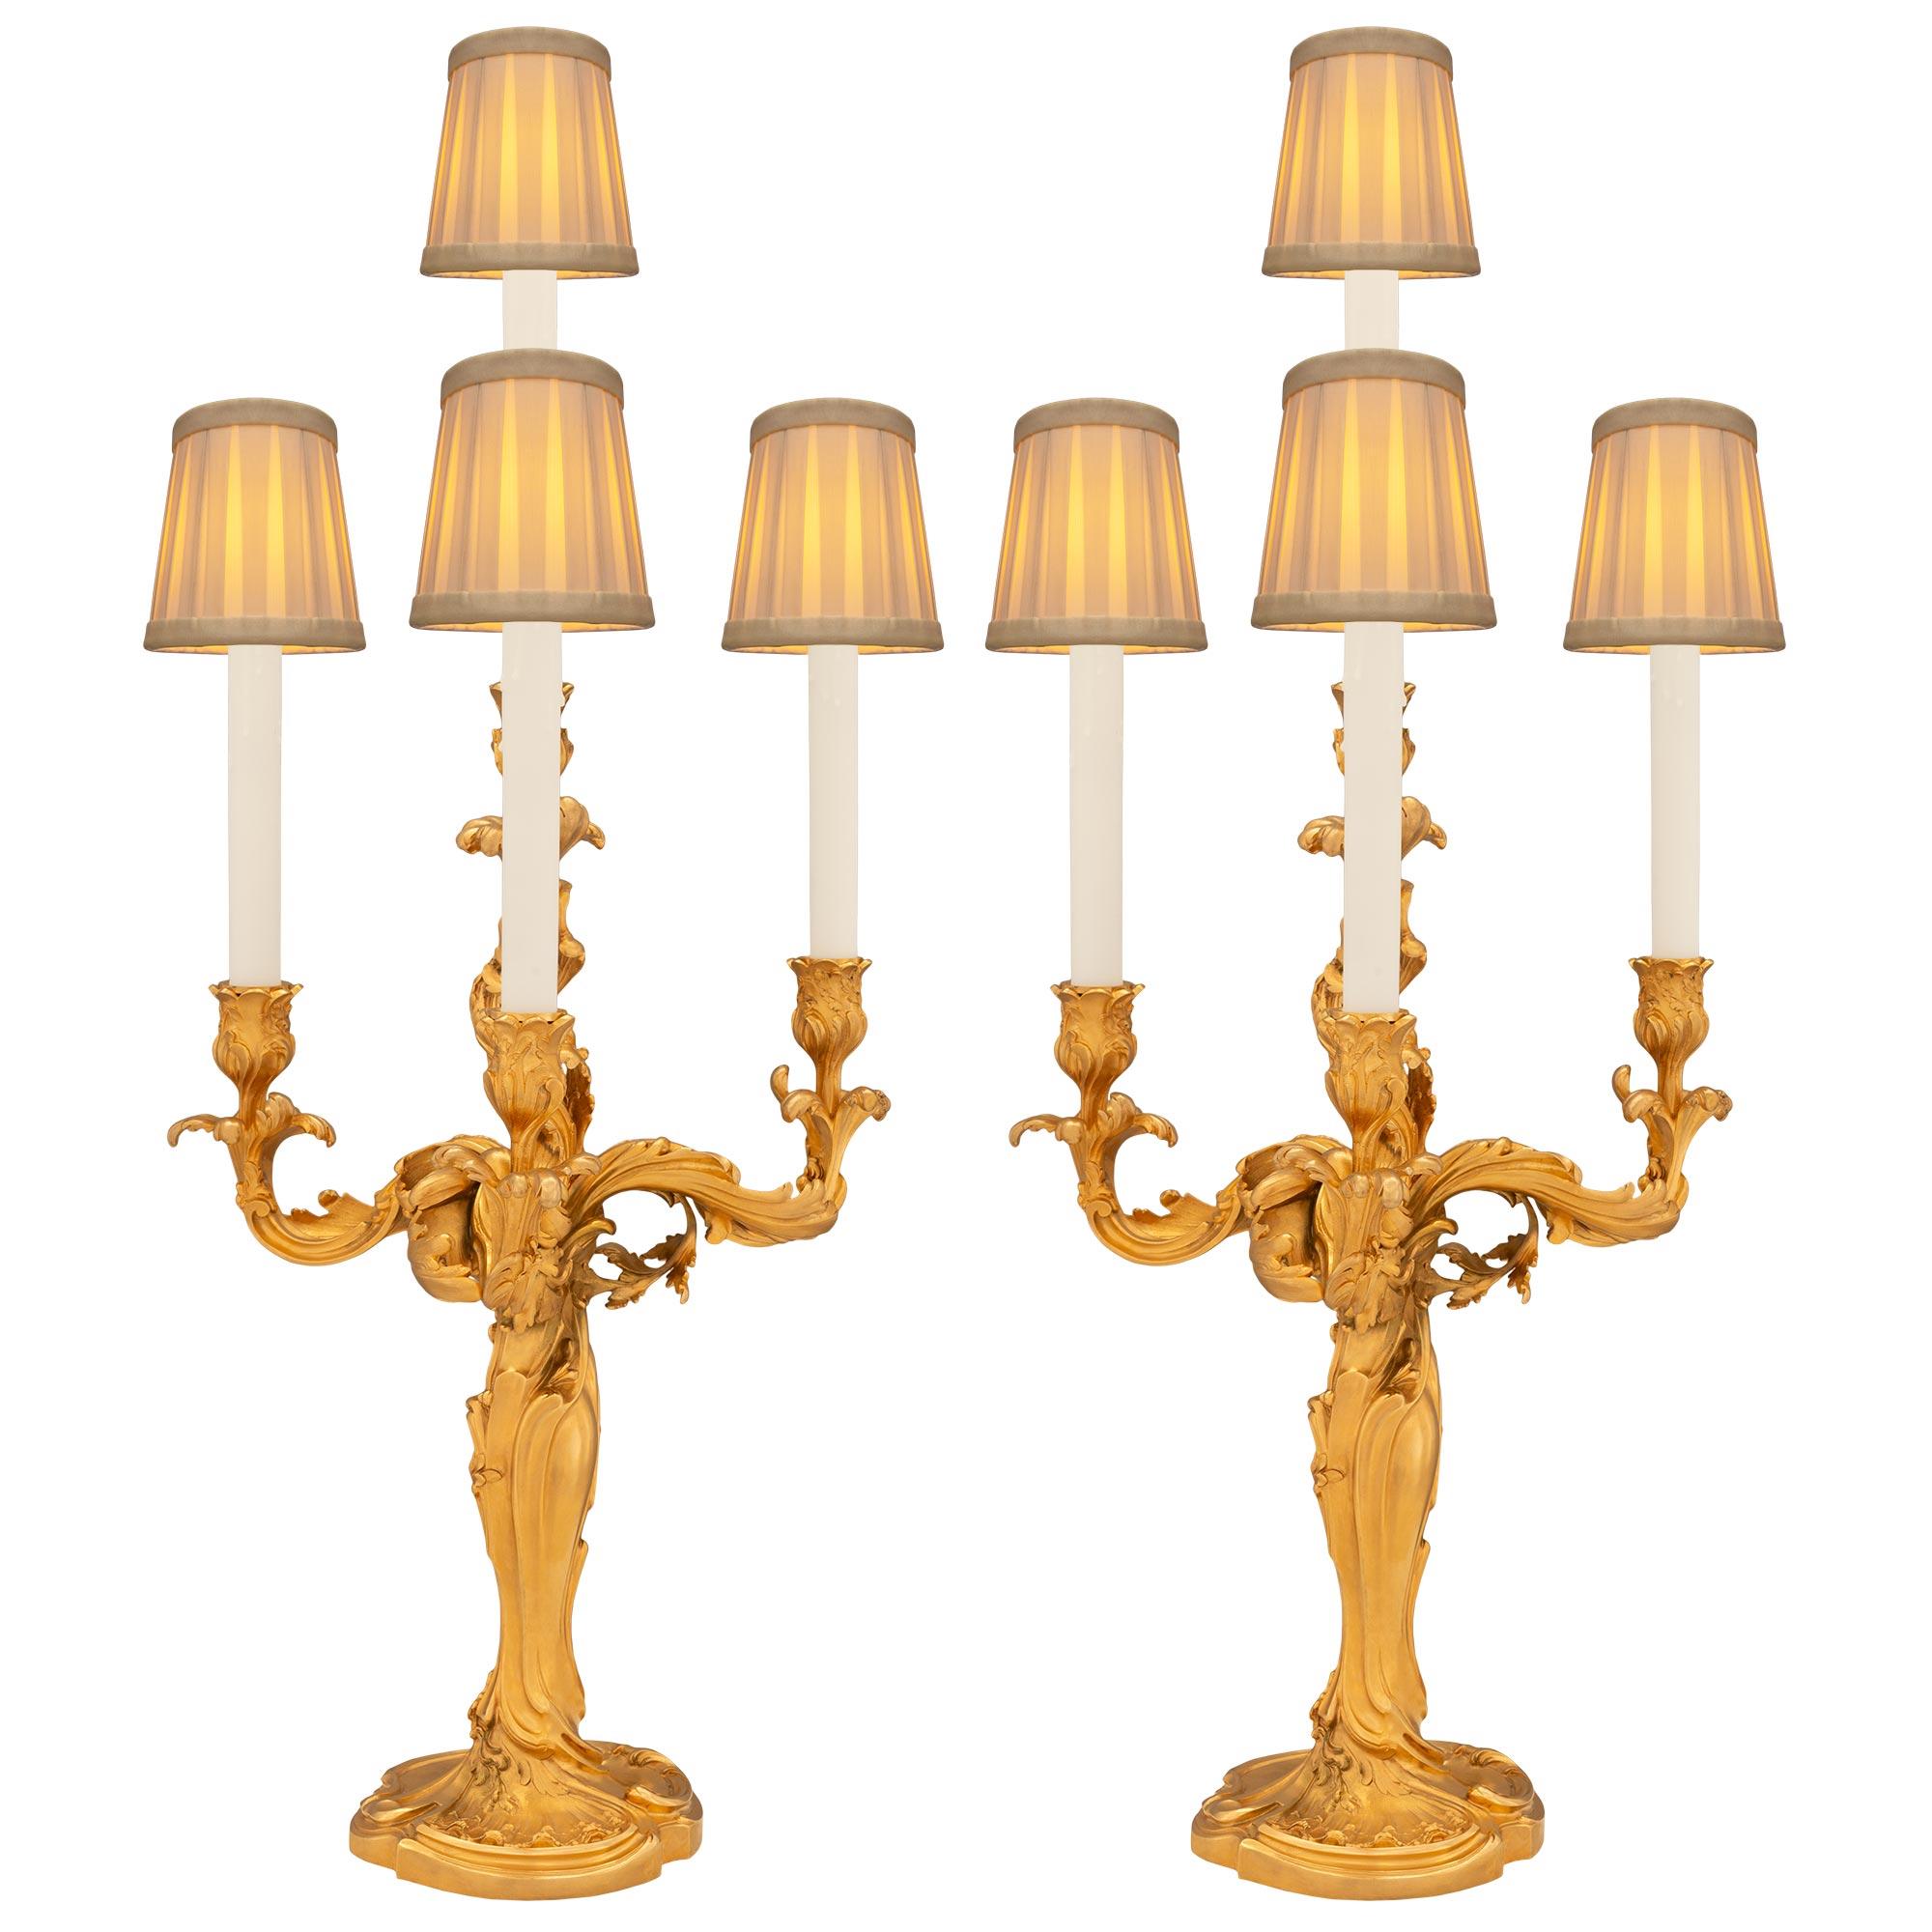 Une belle et grande paire de candélabres en bronze doré Louis XV de la fin du 19ème siècle, signée E. Lelivevre et coulée par la Fonderie Susse Frères. La paire de candélabres électrifiés à quatre bras repose sur des bases circulaires avec des